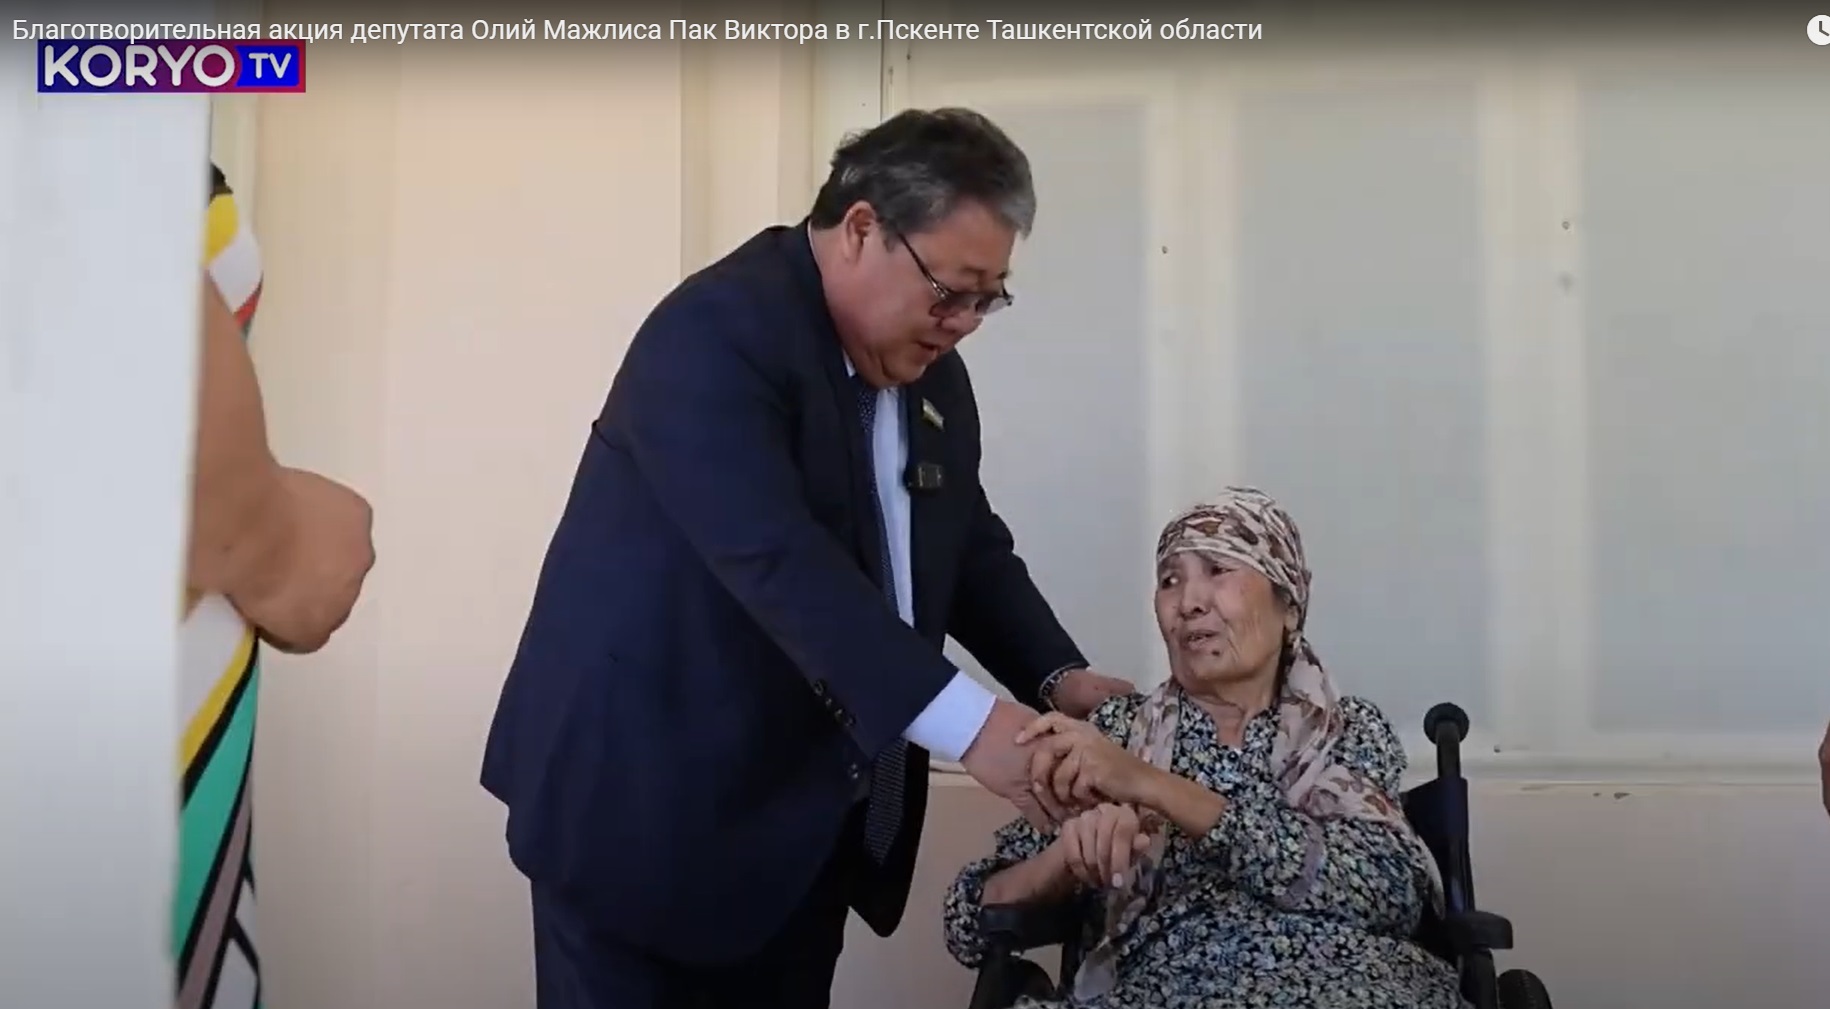 Благотворительная акция депутата Олий Мажлиса Пак Виктора в г.Пскенте Ташкентской области